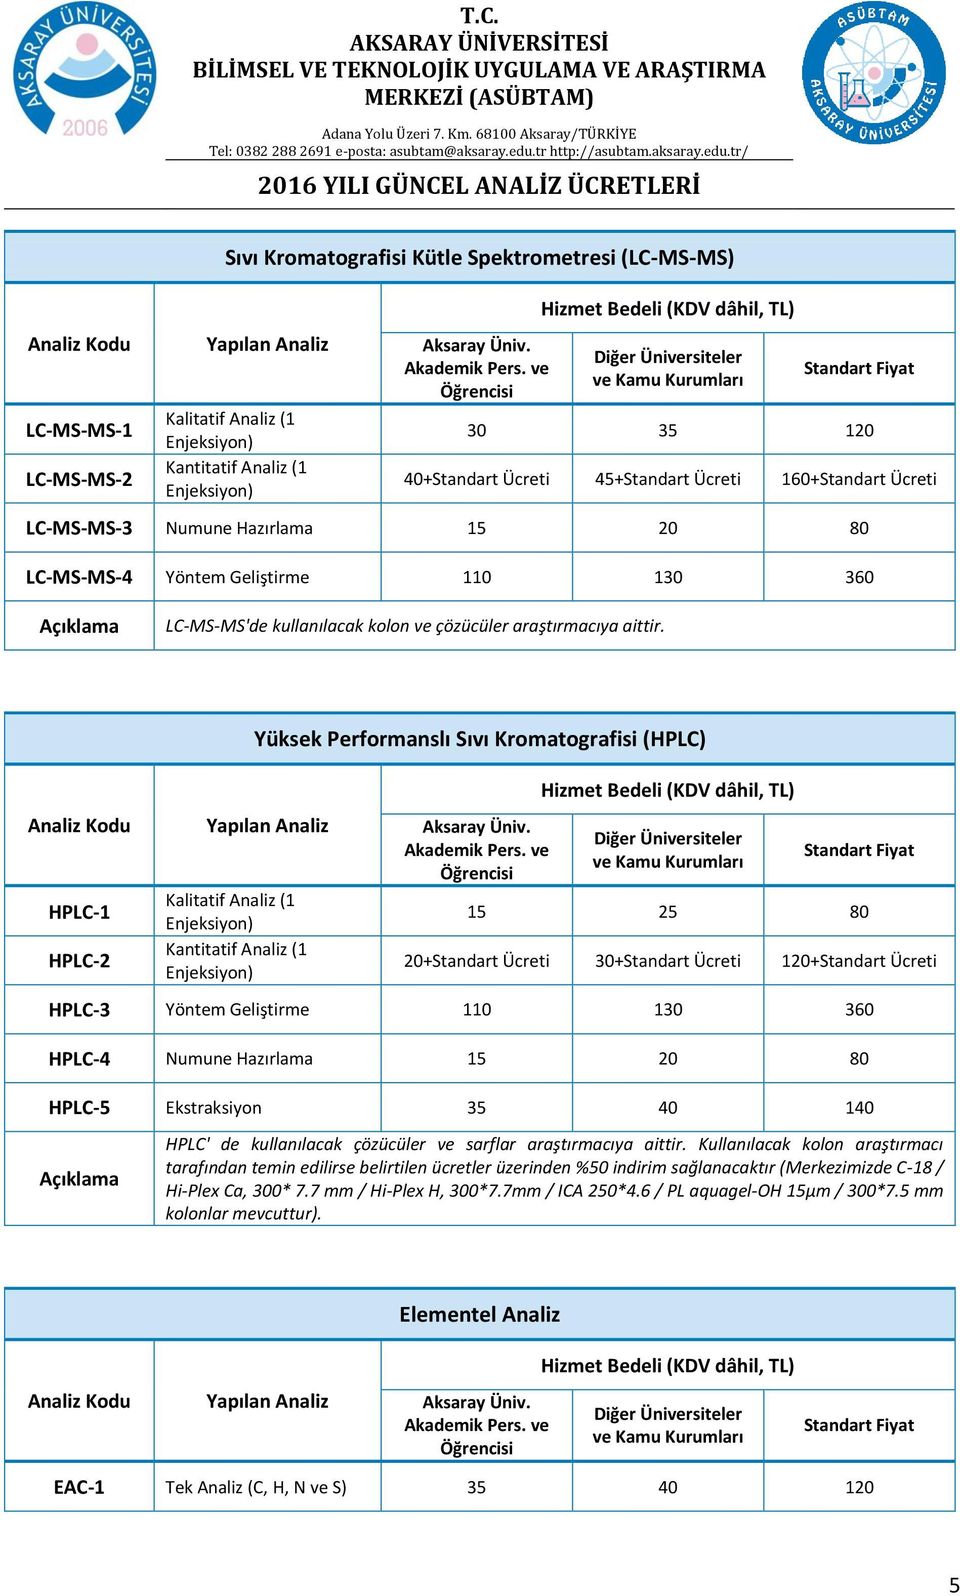 Yüksek Performanslı Sıvı Kromatografisi (HPLC) HPLC-1 HPLC-2 Kalitatif Analiz (1 Enjeksiyon) Kantitatif Analiz (1 Enjeksiyon) 15 25 80 20+Standart Ücreti 30+Standart Ücreti 120+Standart Ücreti HPLC-3